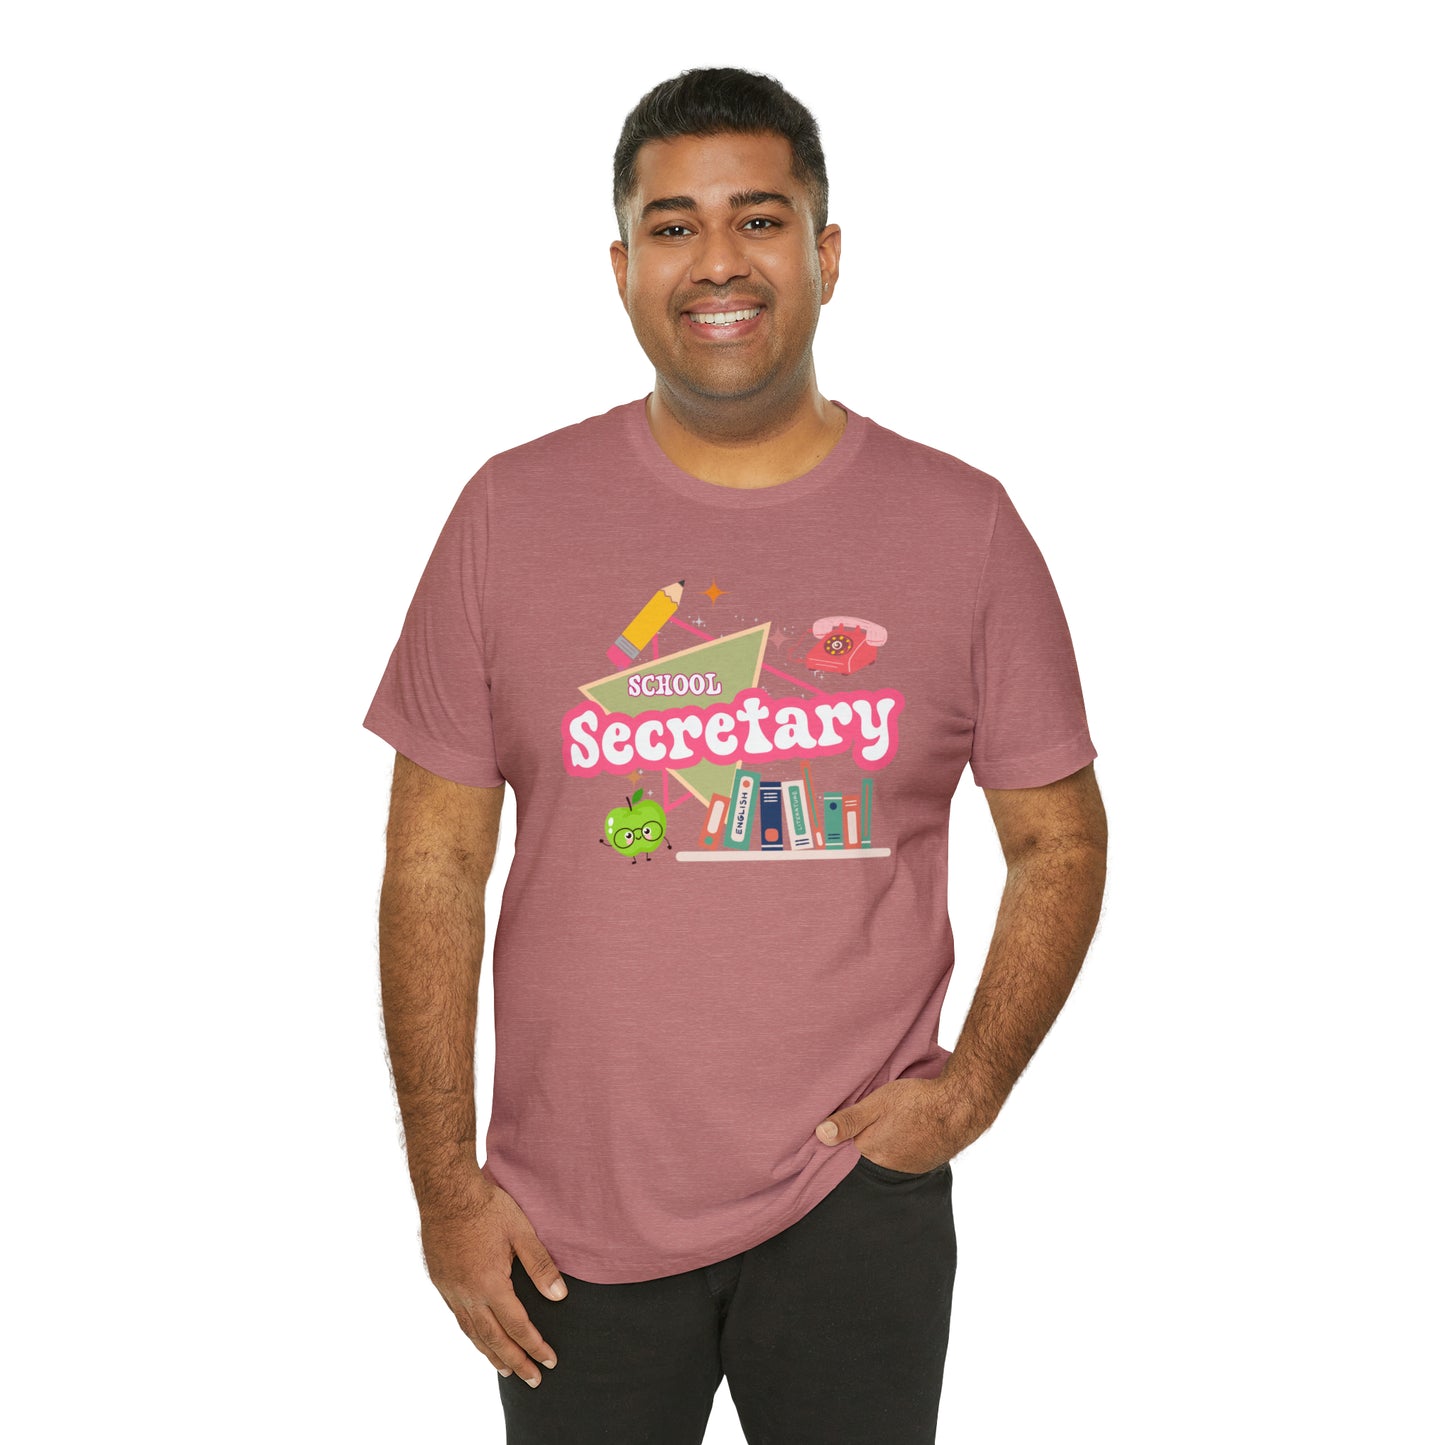 School Secretary shirt, 90s shirt, 90s teacher shirt, colorful school secretary shirt, colorful school shirt, T543